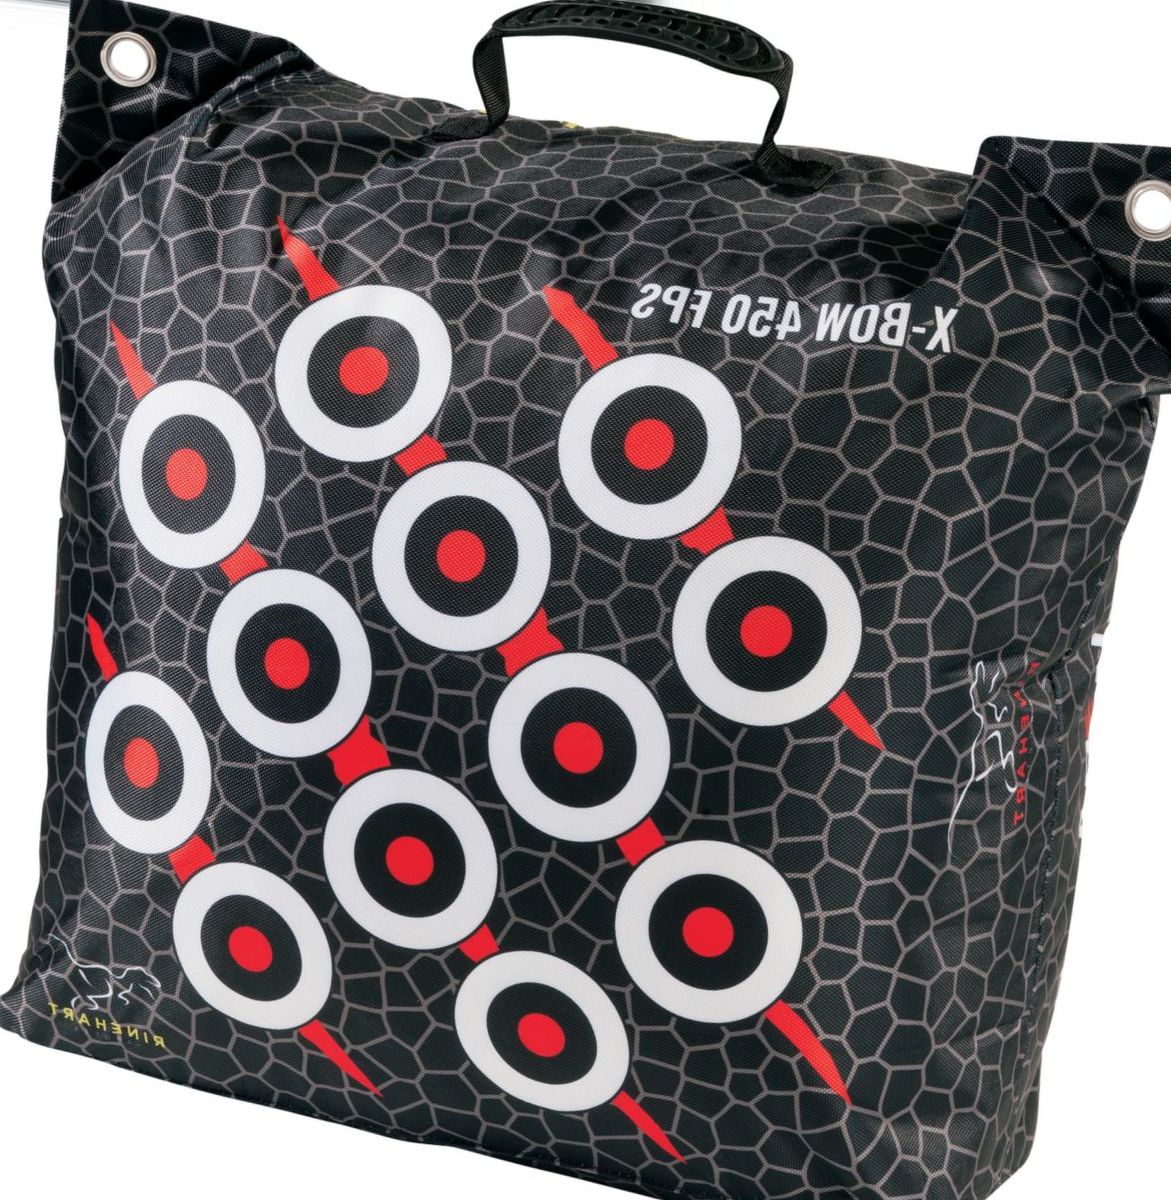 Rinehart Crossbow Bag Target